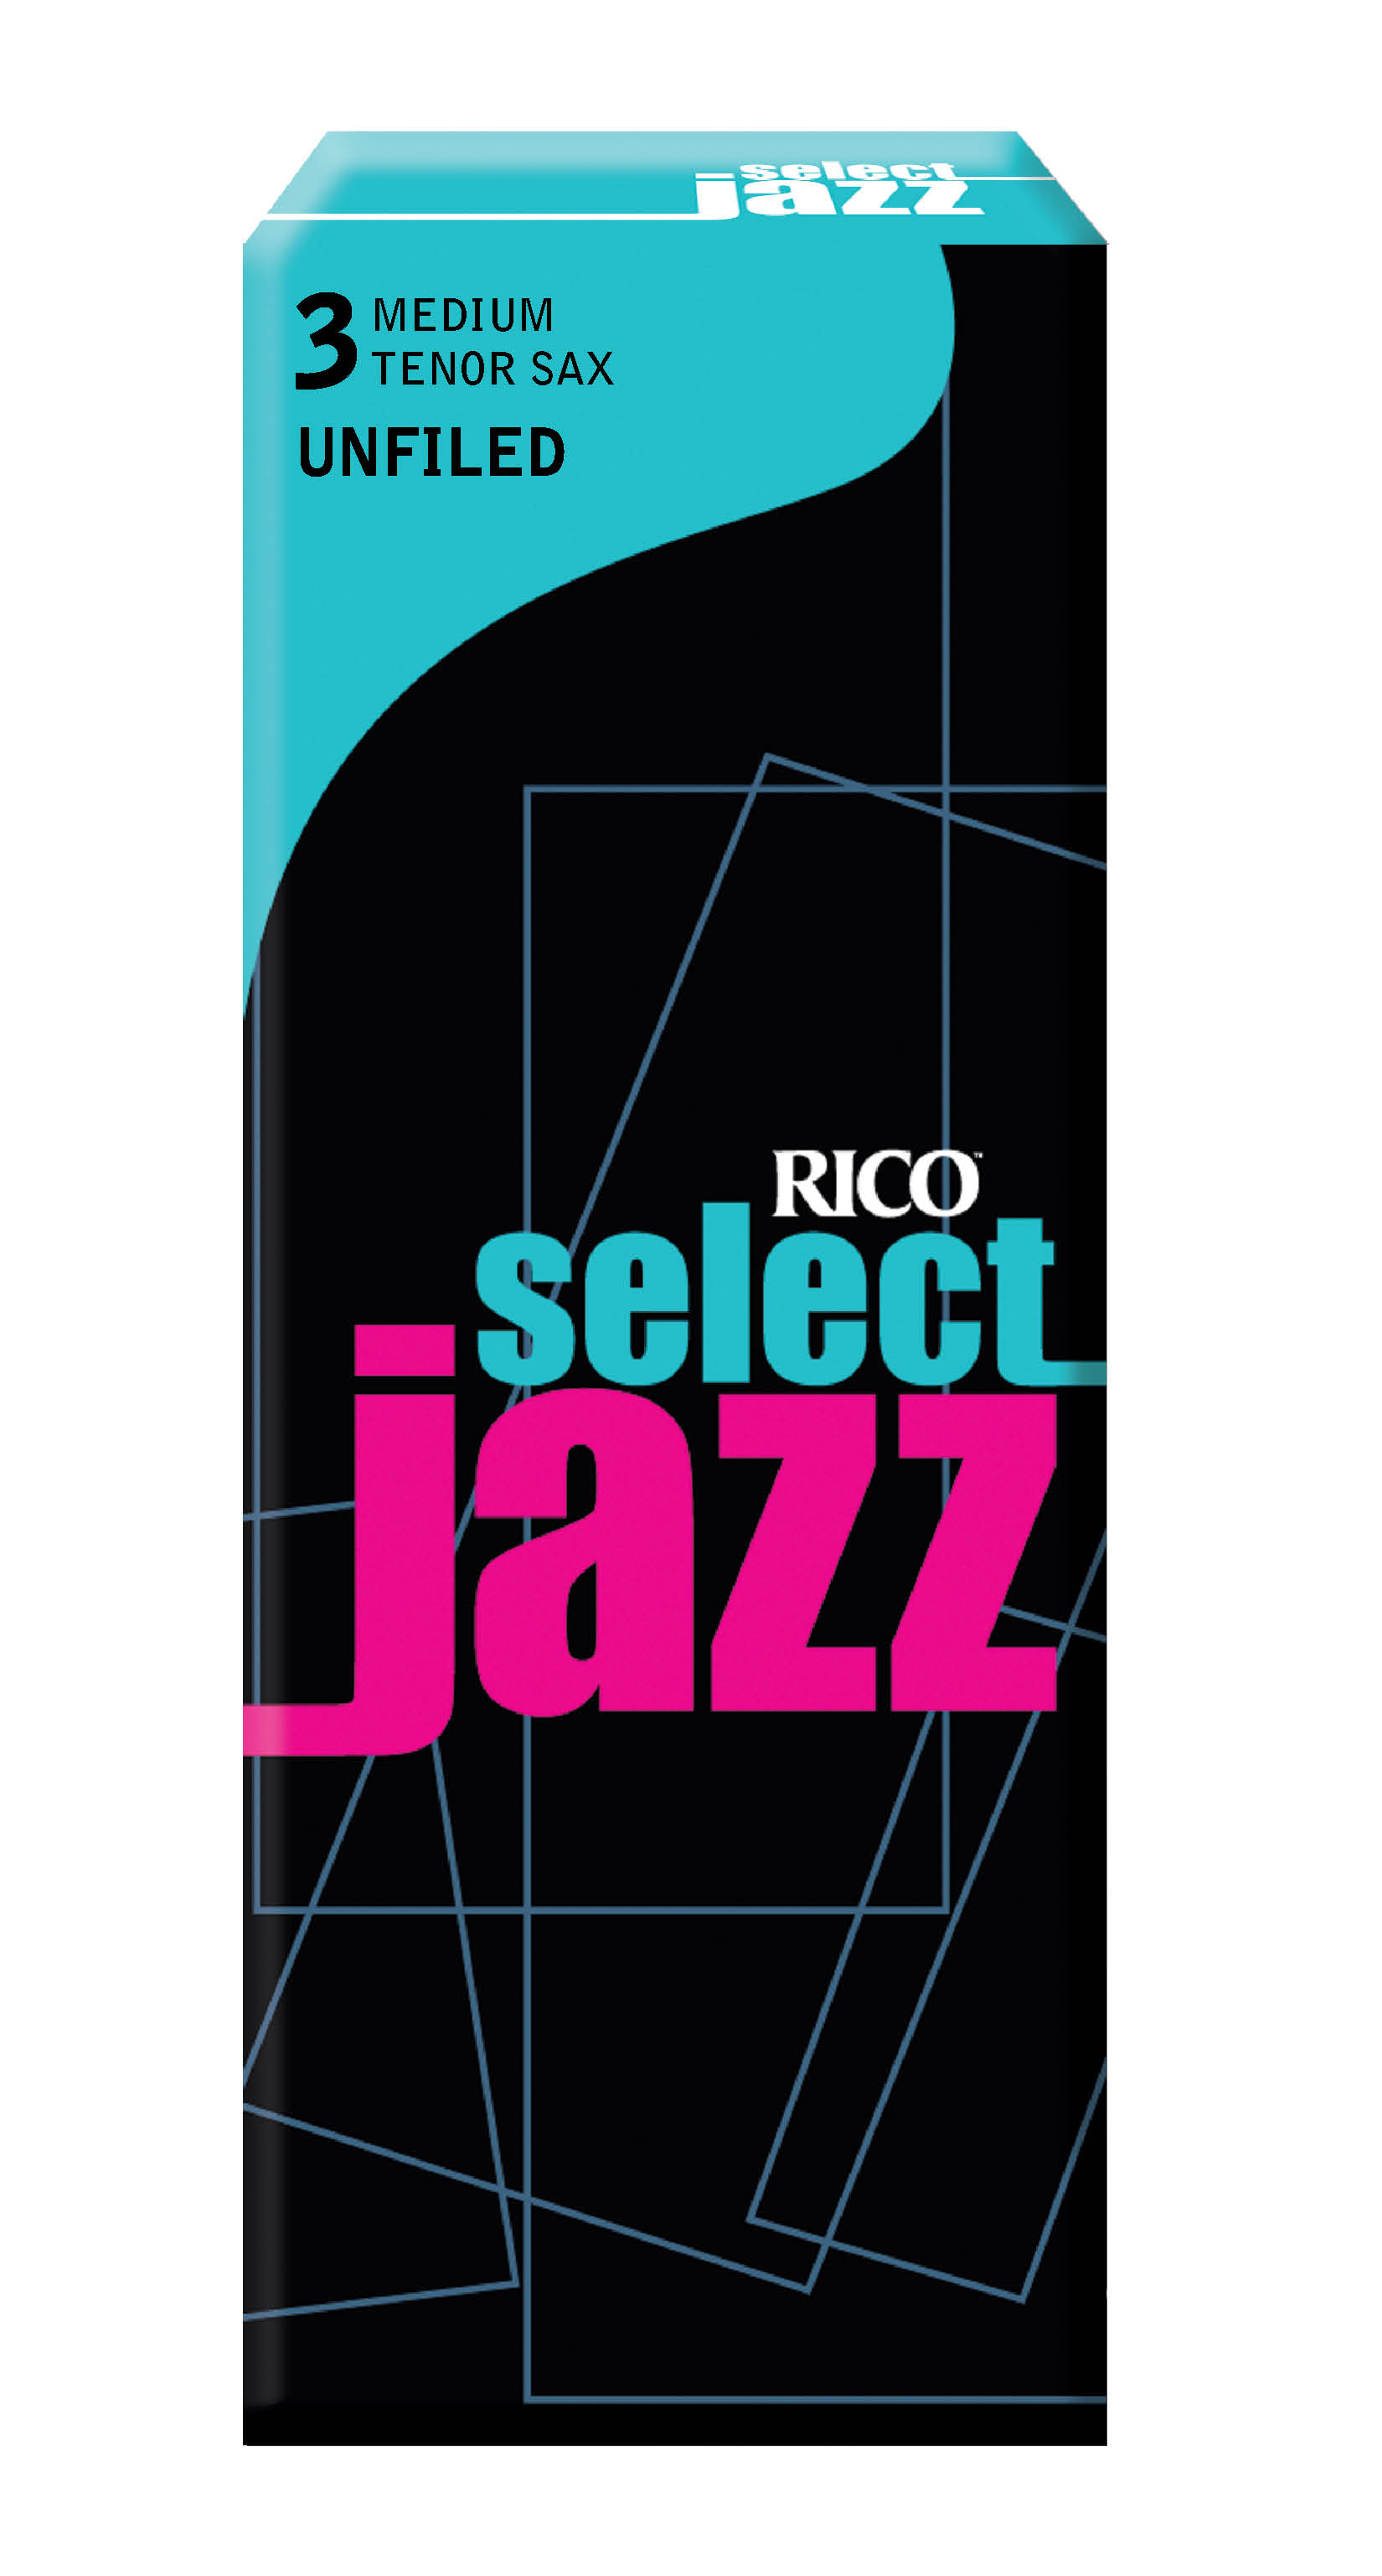 D'Addario Select Jazz Unfiled Tenor Saxophone Reeds, Strength 3 Medium, 5-pack